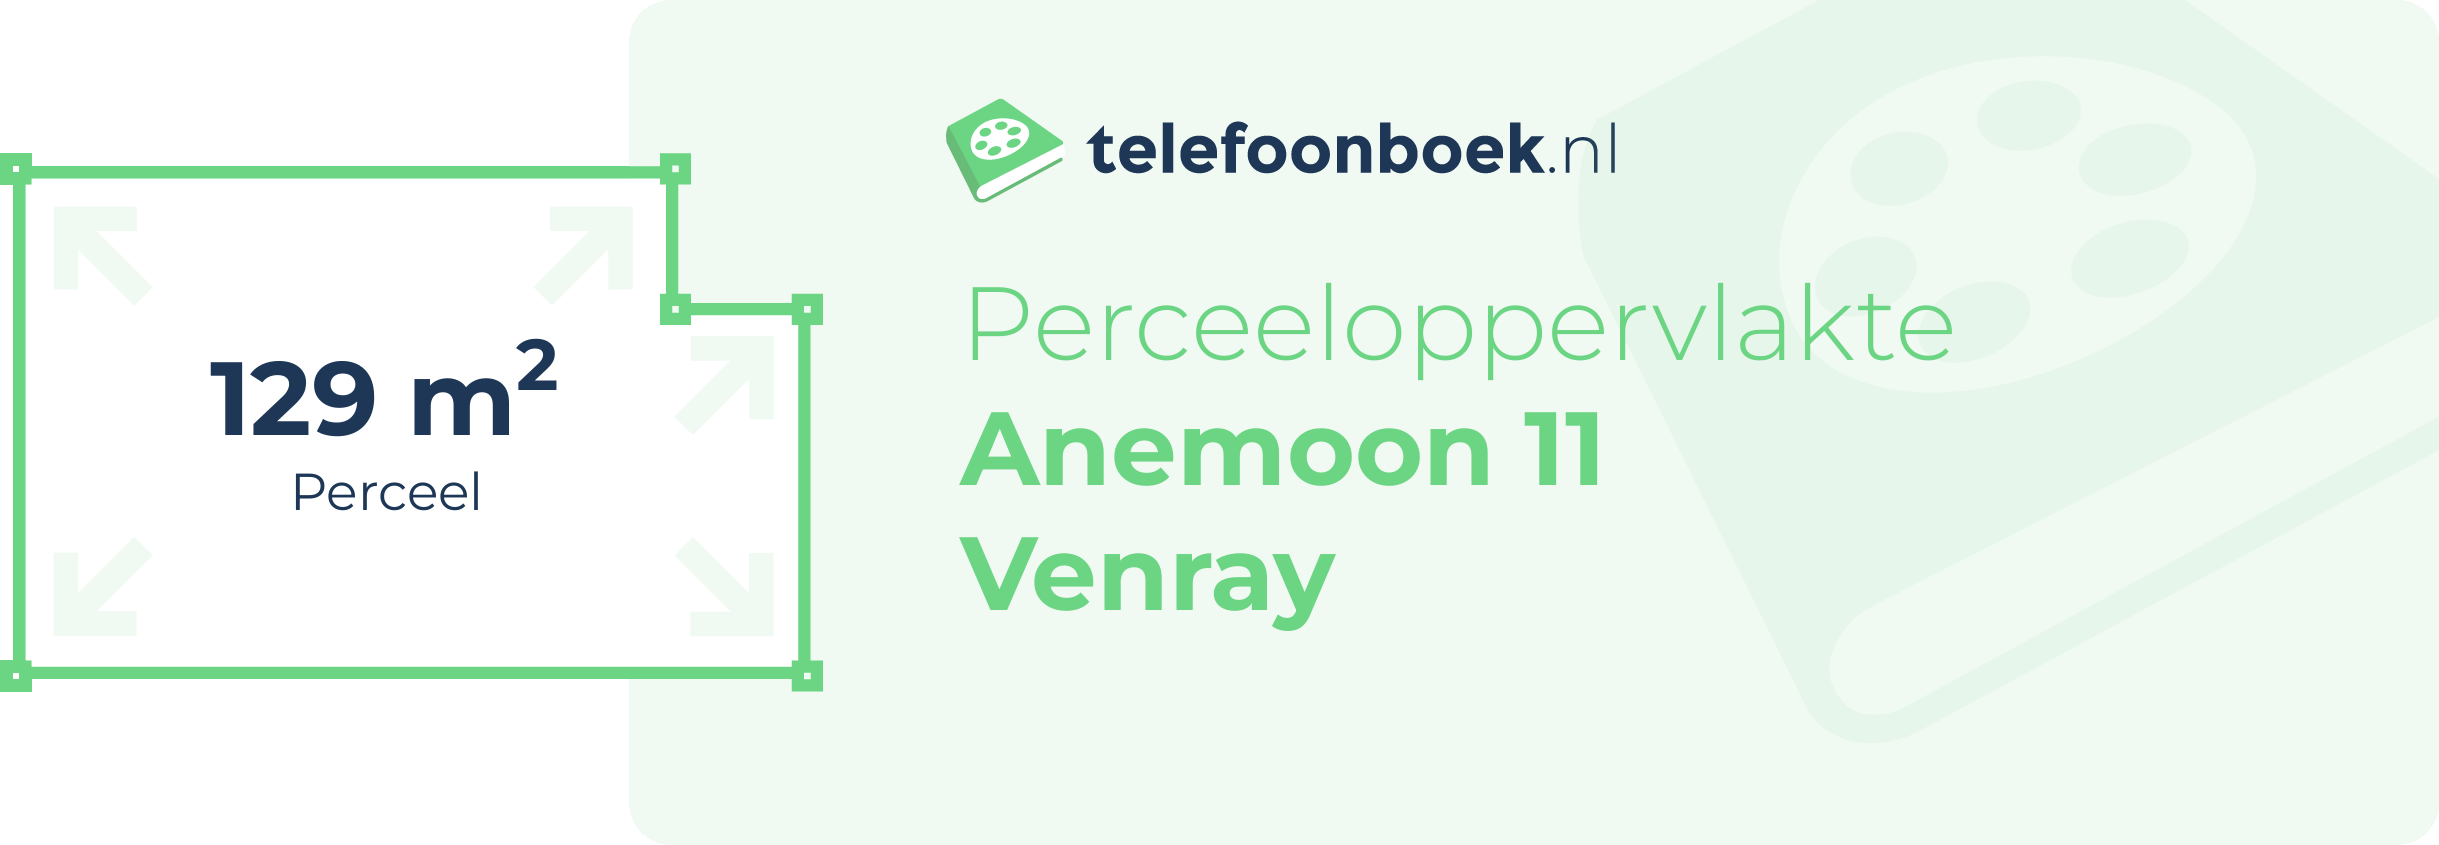 Perceeloppervlakte Anemoon 11 Venray